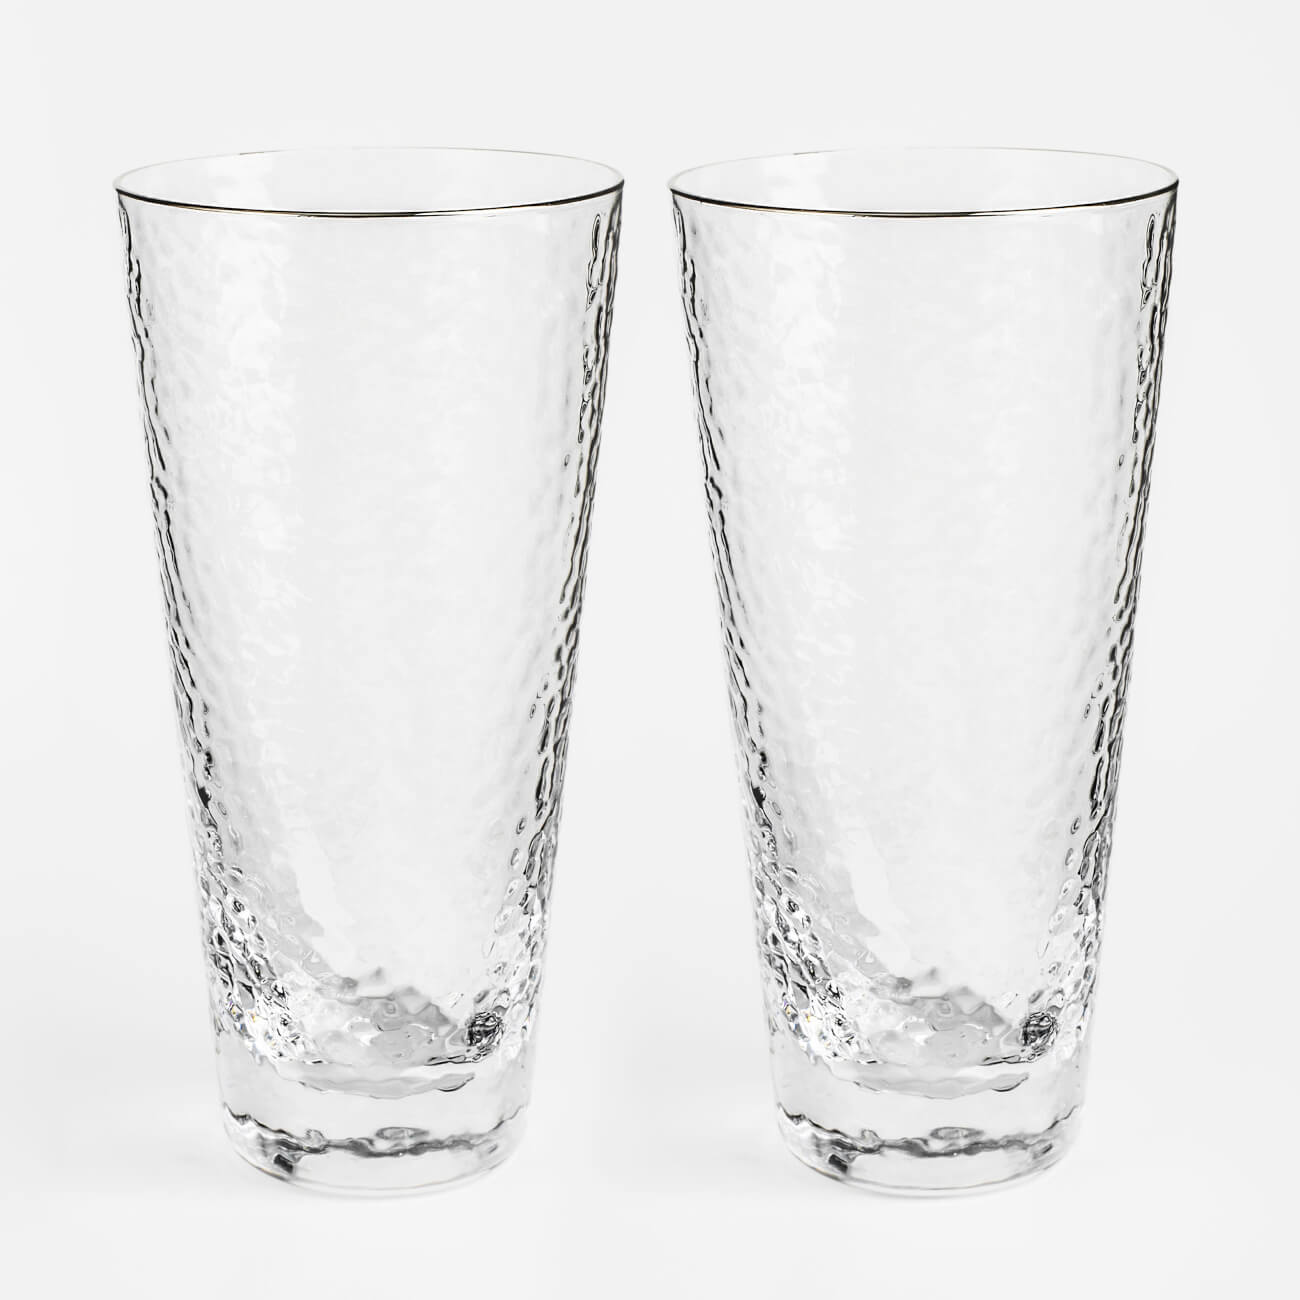 Стакан, 450 мл, 2 шт, стекло, с серебристым кантом, Ripply silver бокал для мартини 250 мл 2 шт стекло перламутр ripply polar